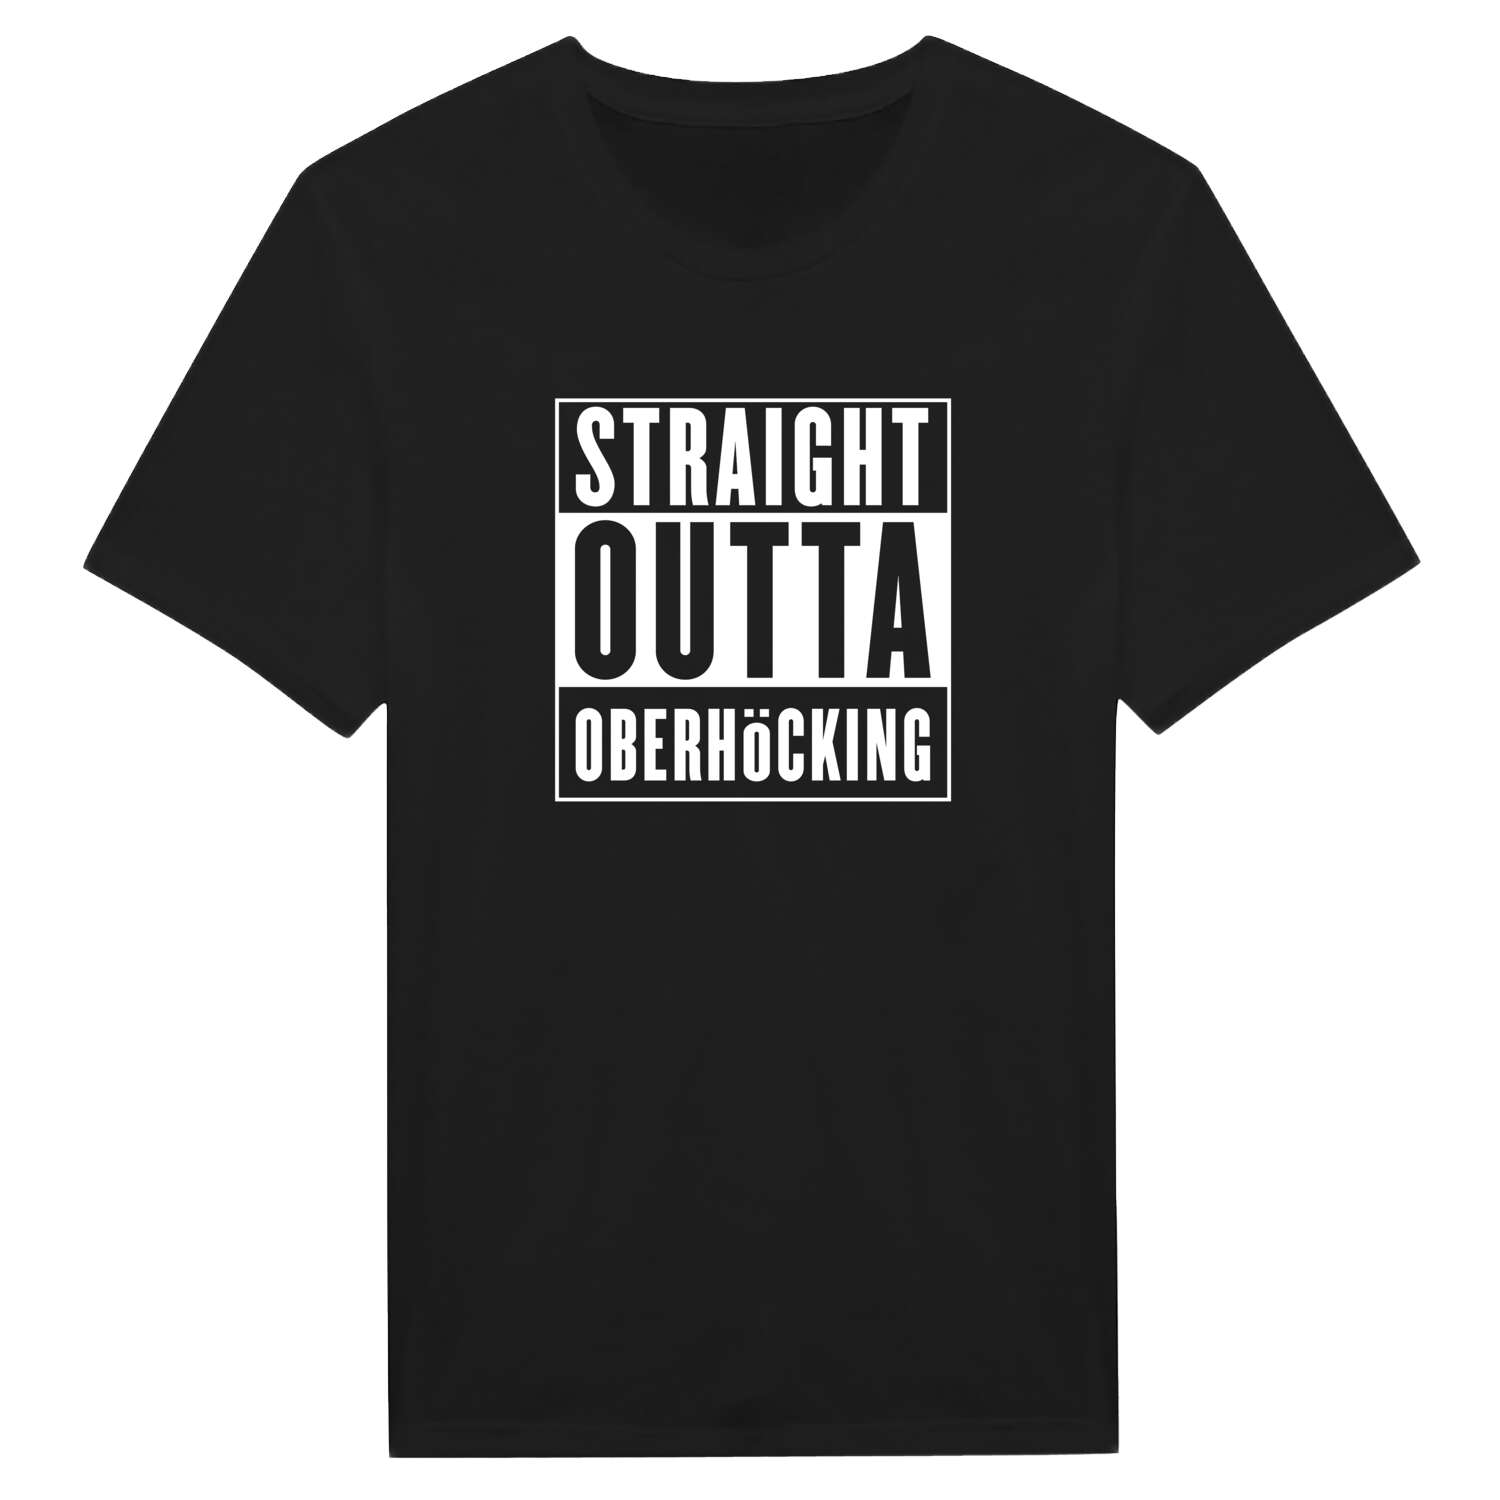 Oberhöcking T-Shirt »Straight Outta«